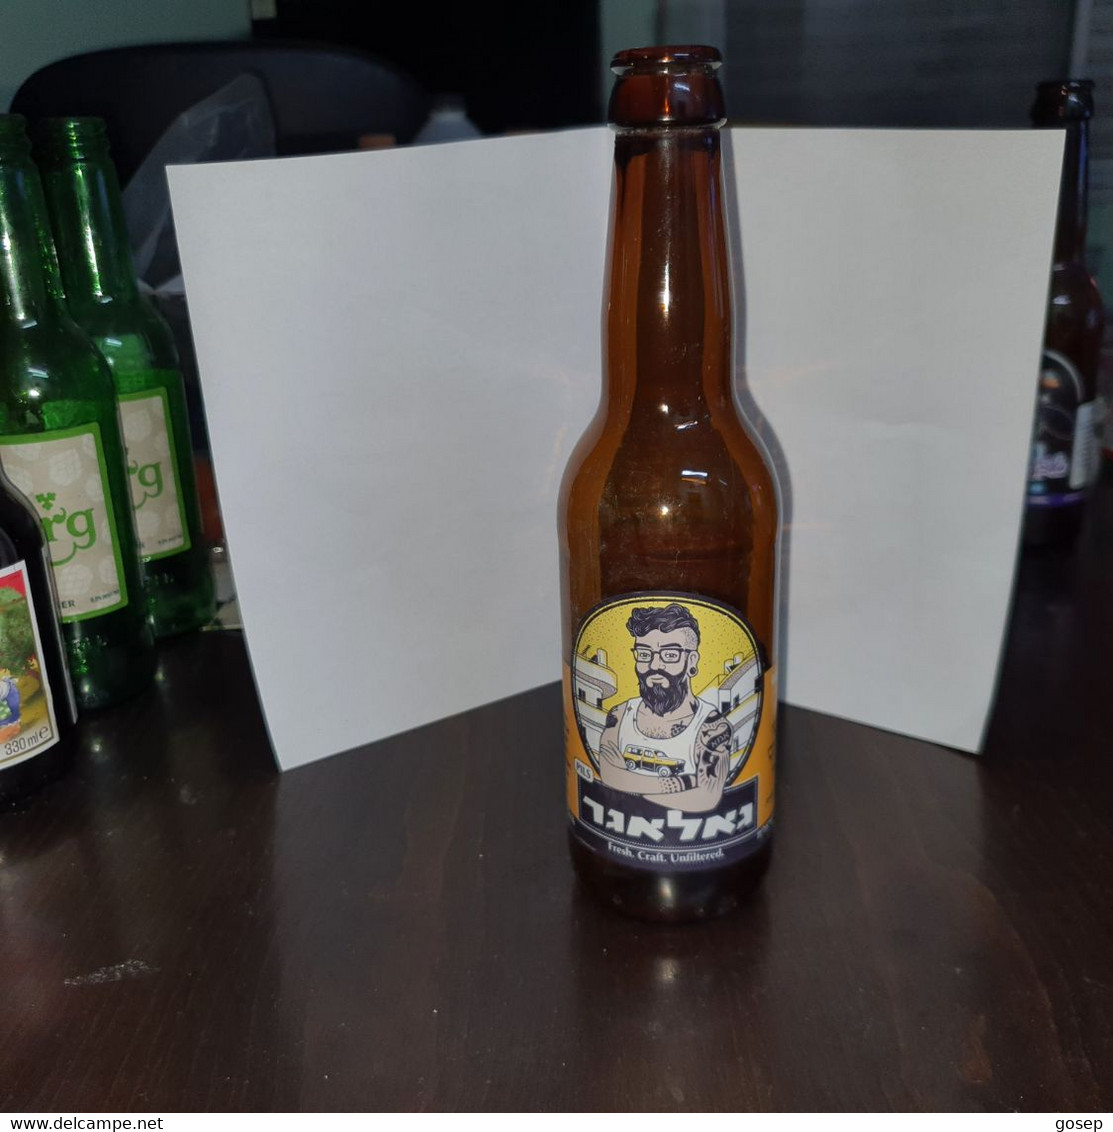 Israel-Kraft-Gallagher Beer Crapat-(330ml)-(5.1%)-bottles-used - Bier